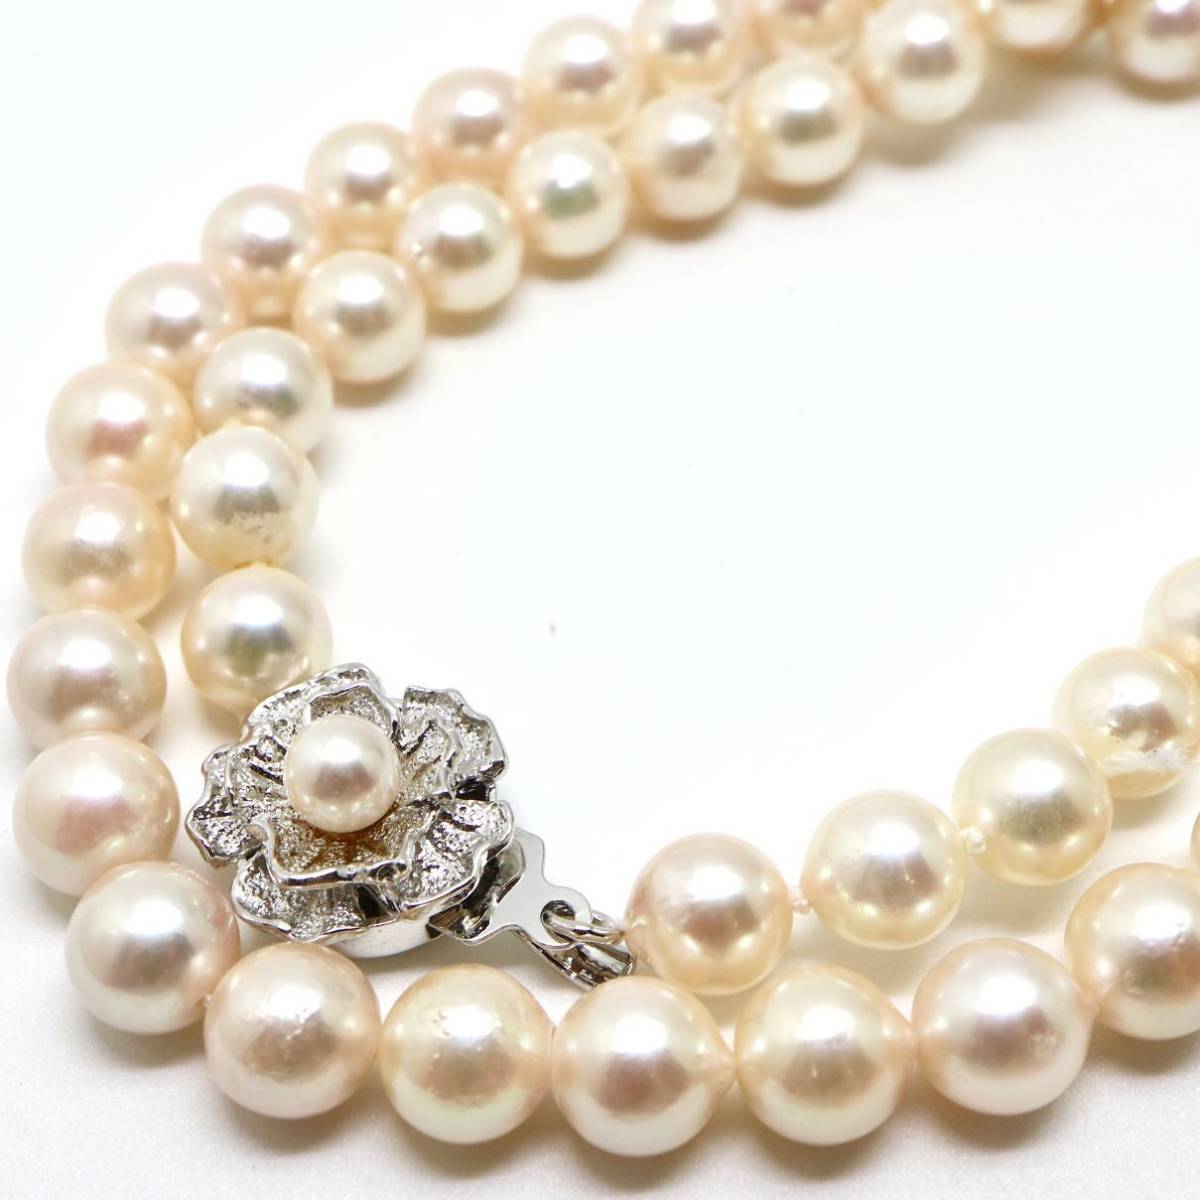  《アコヤ本真珠ネックレス》J 7.0-7.5mm珠 32.3g 45cm pearl necklace ジュエリー jewelry EA0/EB0_画像1